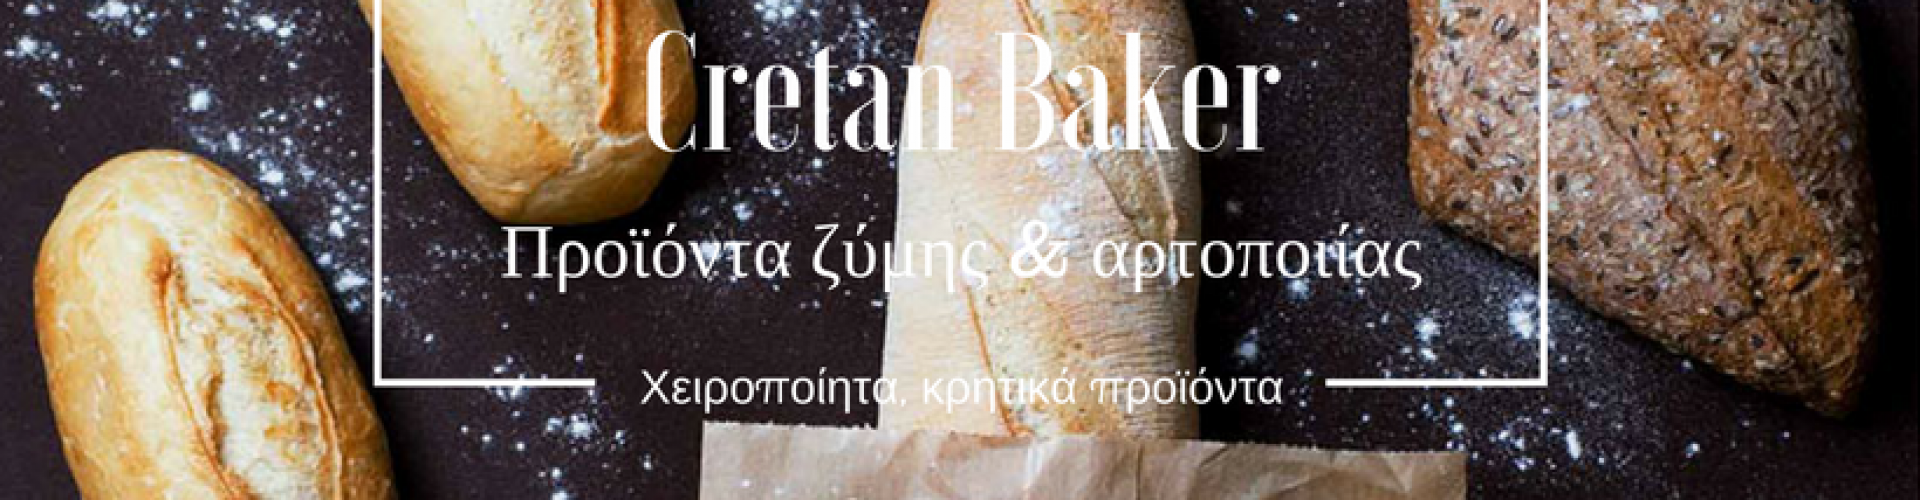 cretan-baker-foto.png